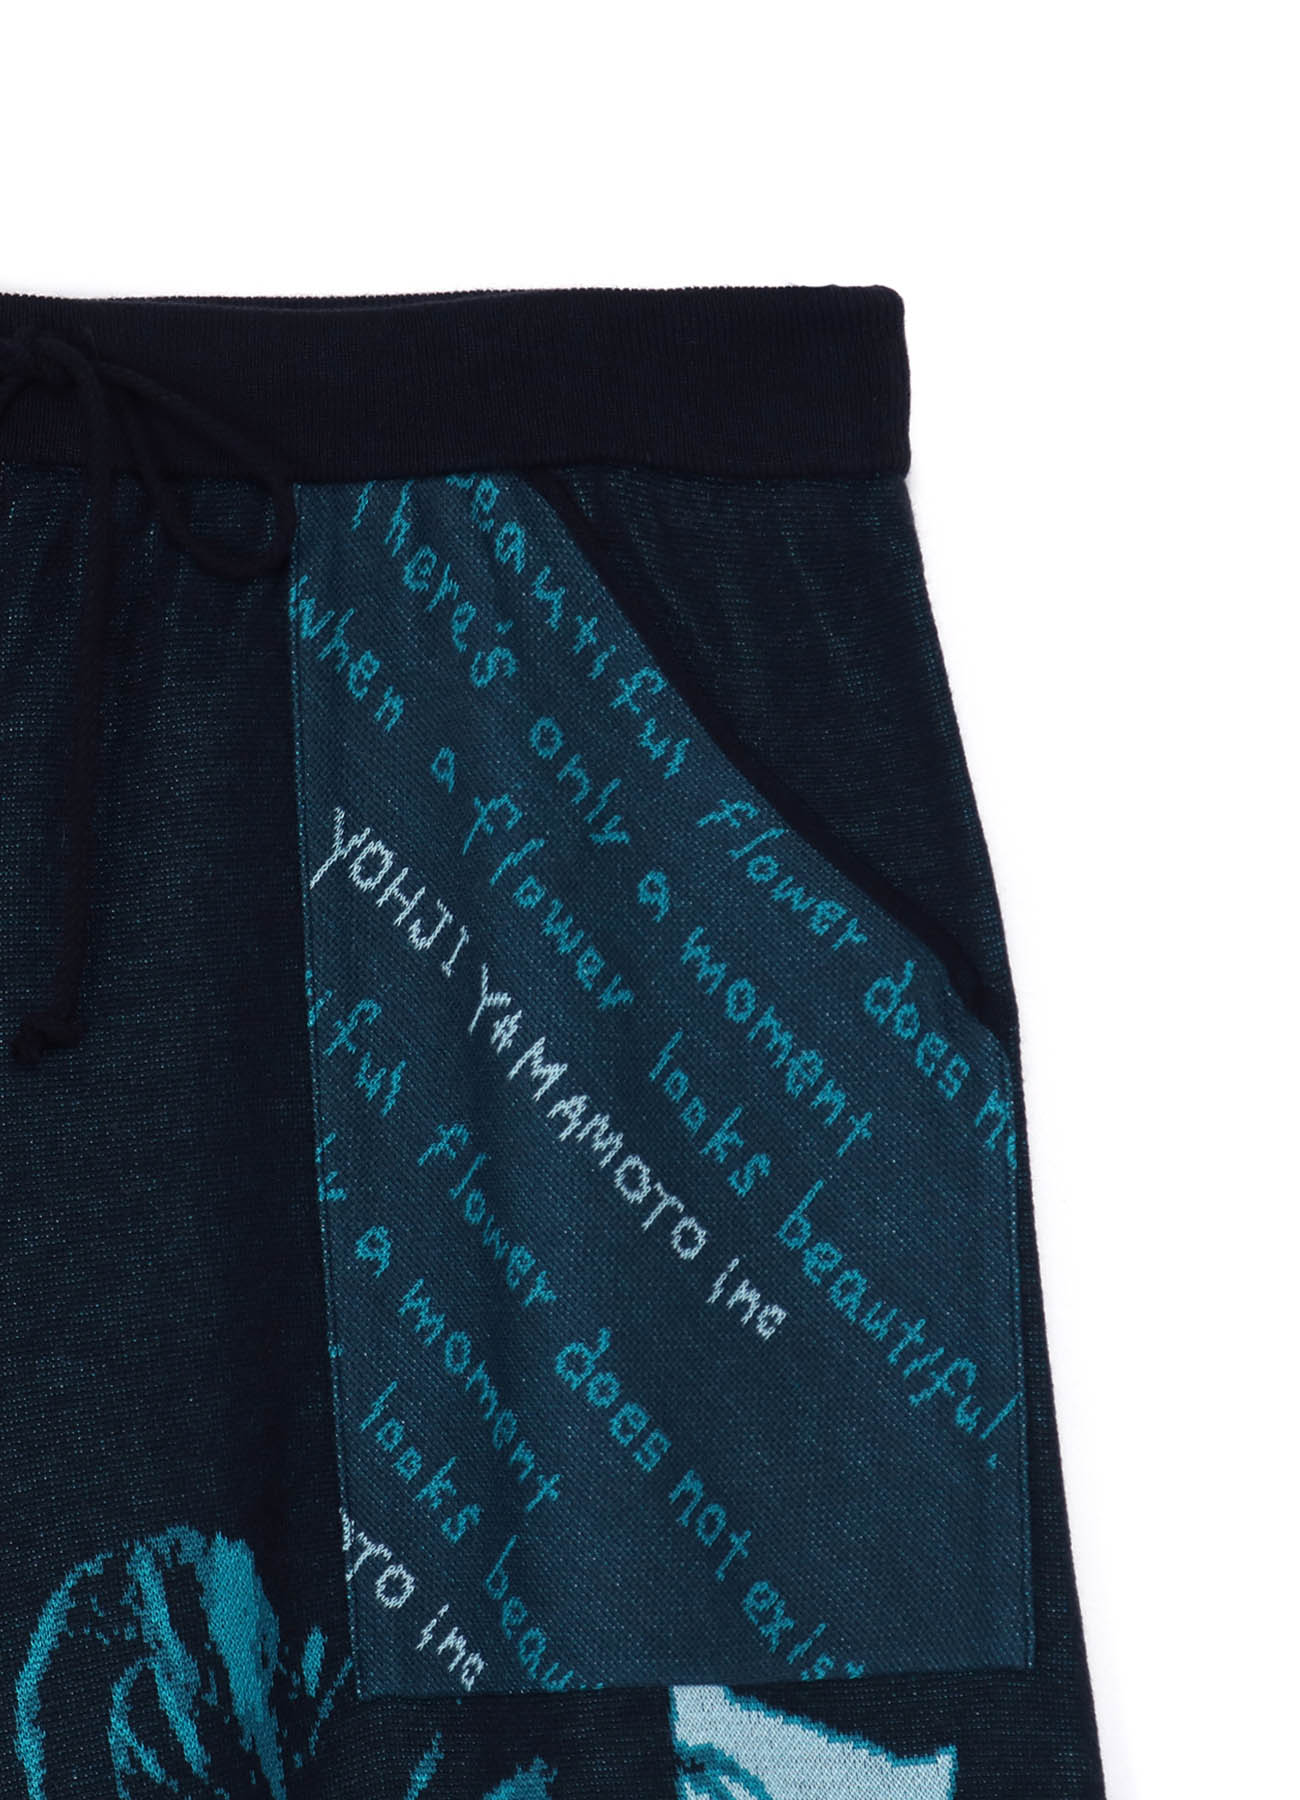 Hameauze Jacquard Turquoise Graphic Omnibus Culottes Pants